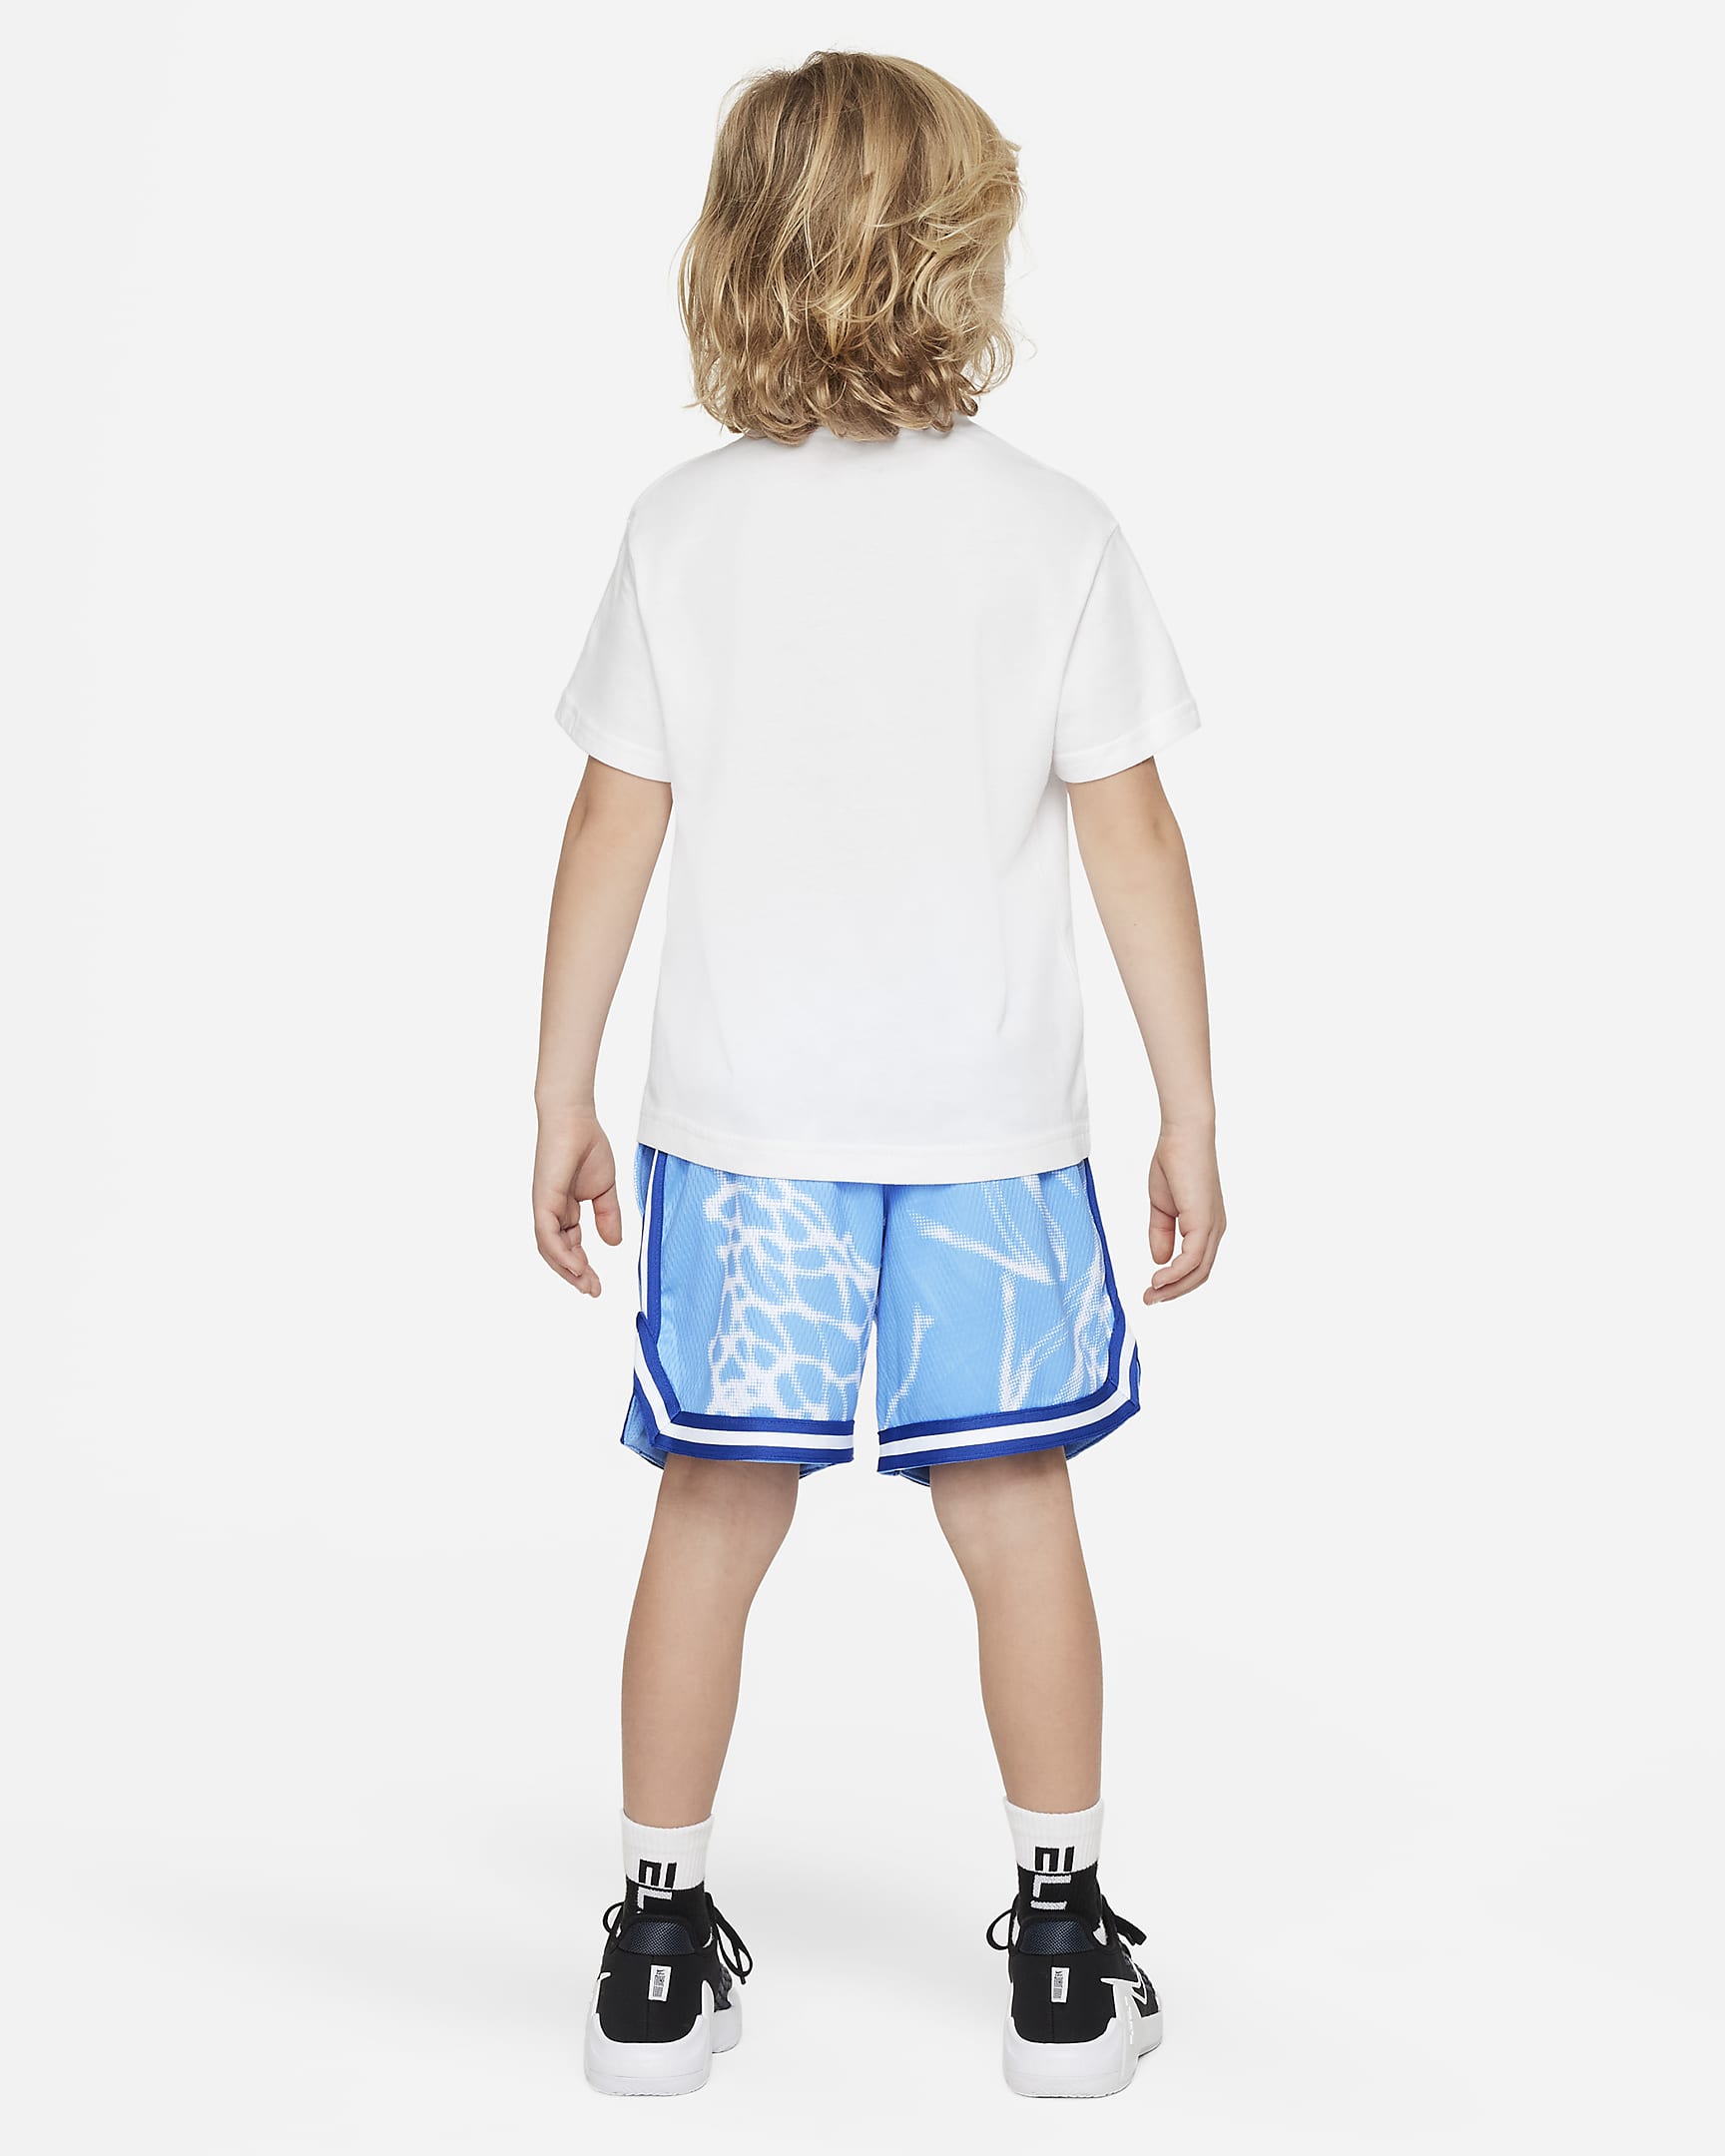 Nike Culture of Basketball Little Kids' Dri-FIT Mesh Shorts Set. Nike.com